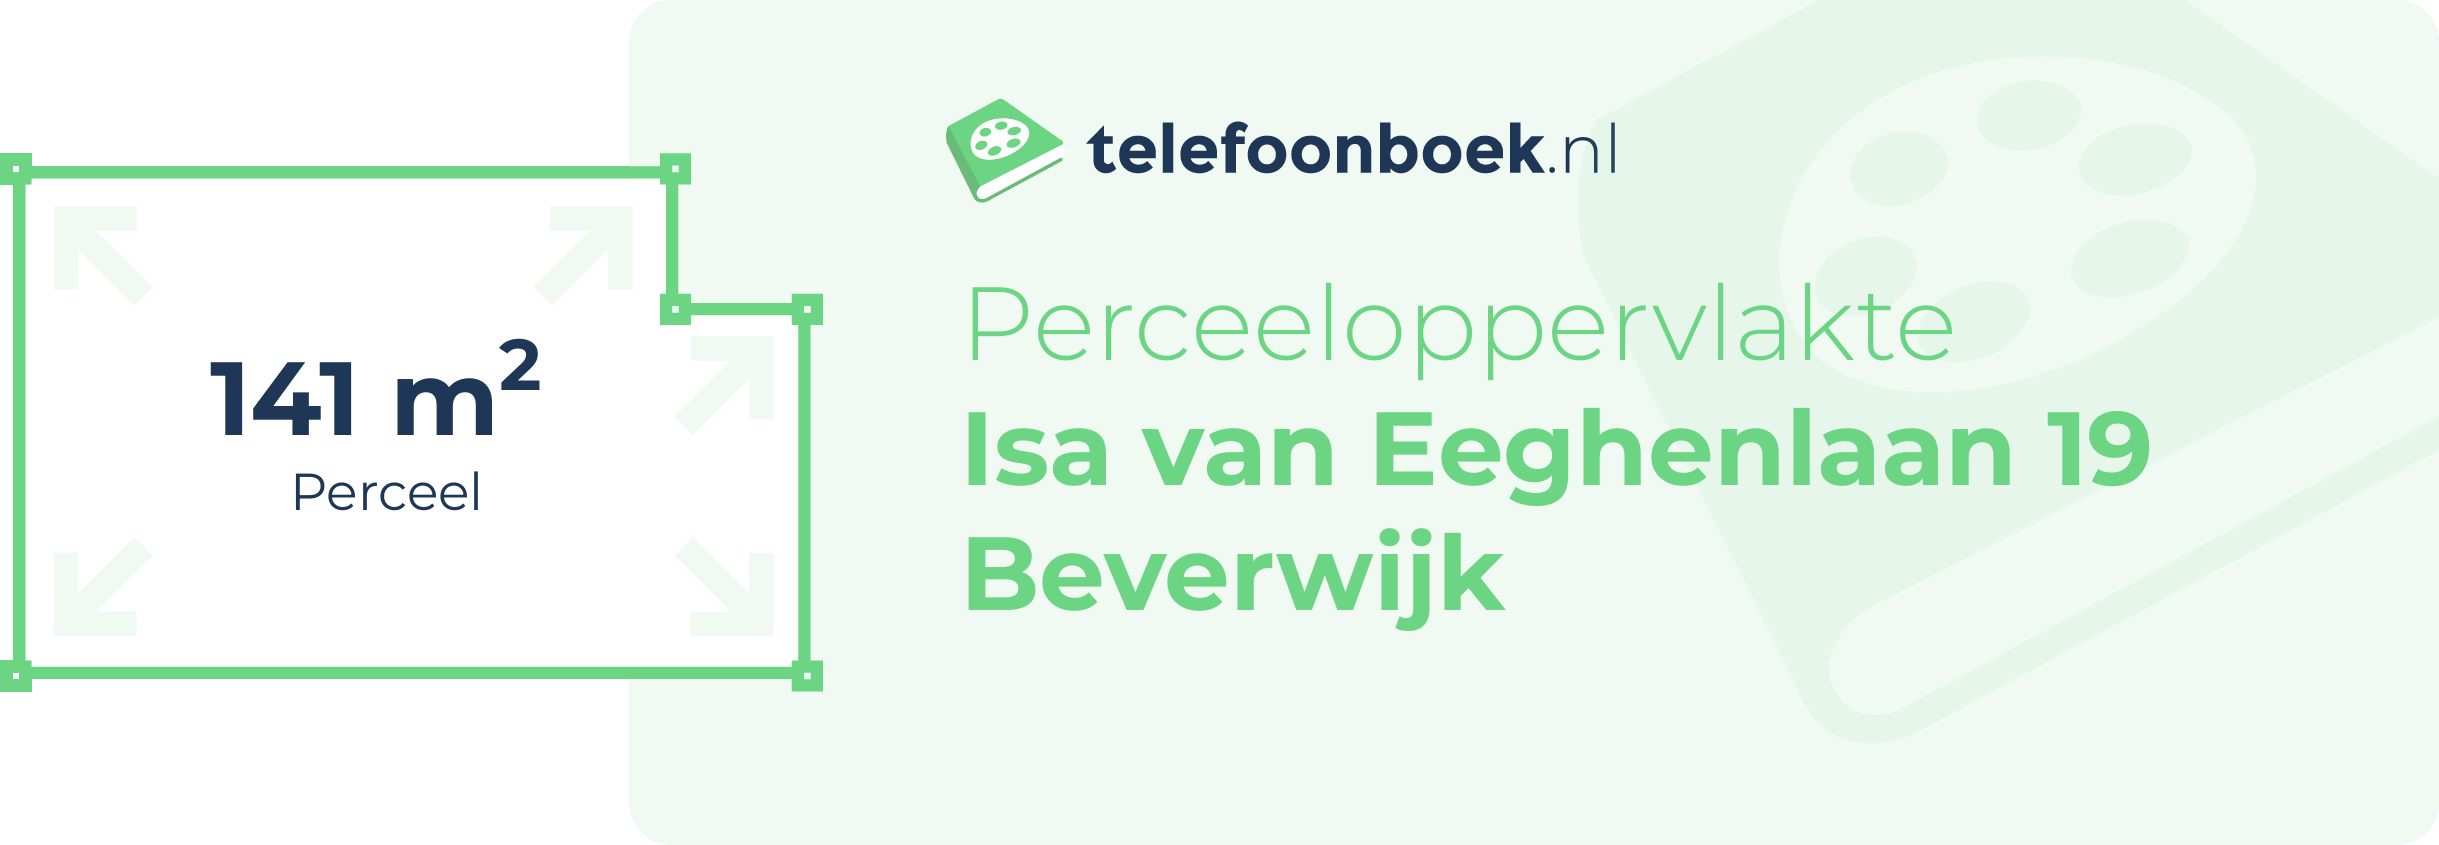 Perceeloppervlakte Isa Van Eeghenlaan 19 Beverwijk